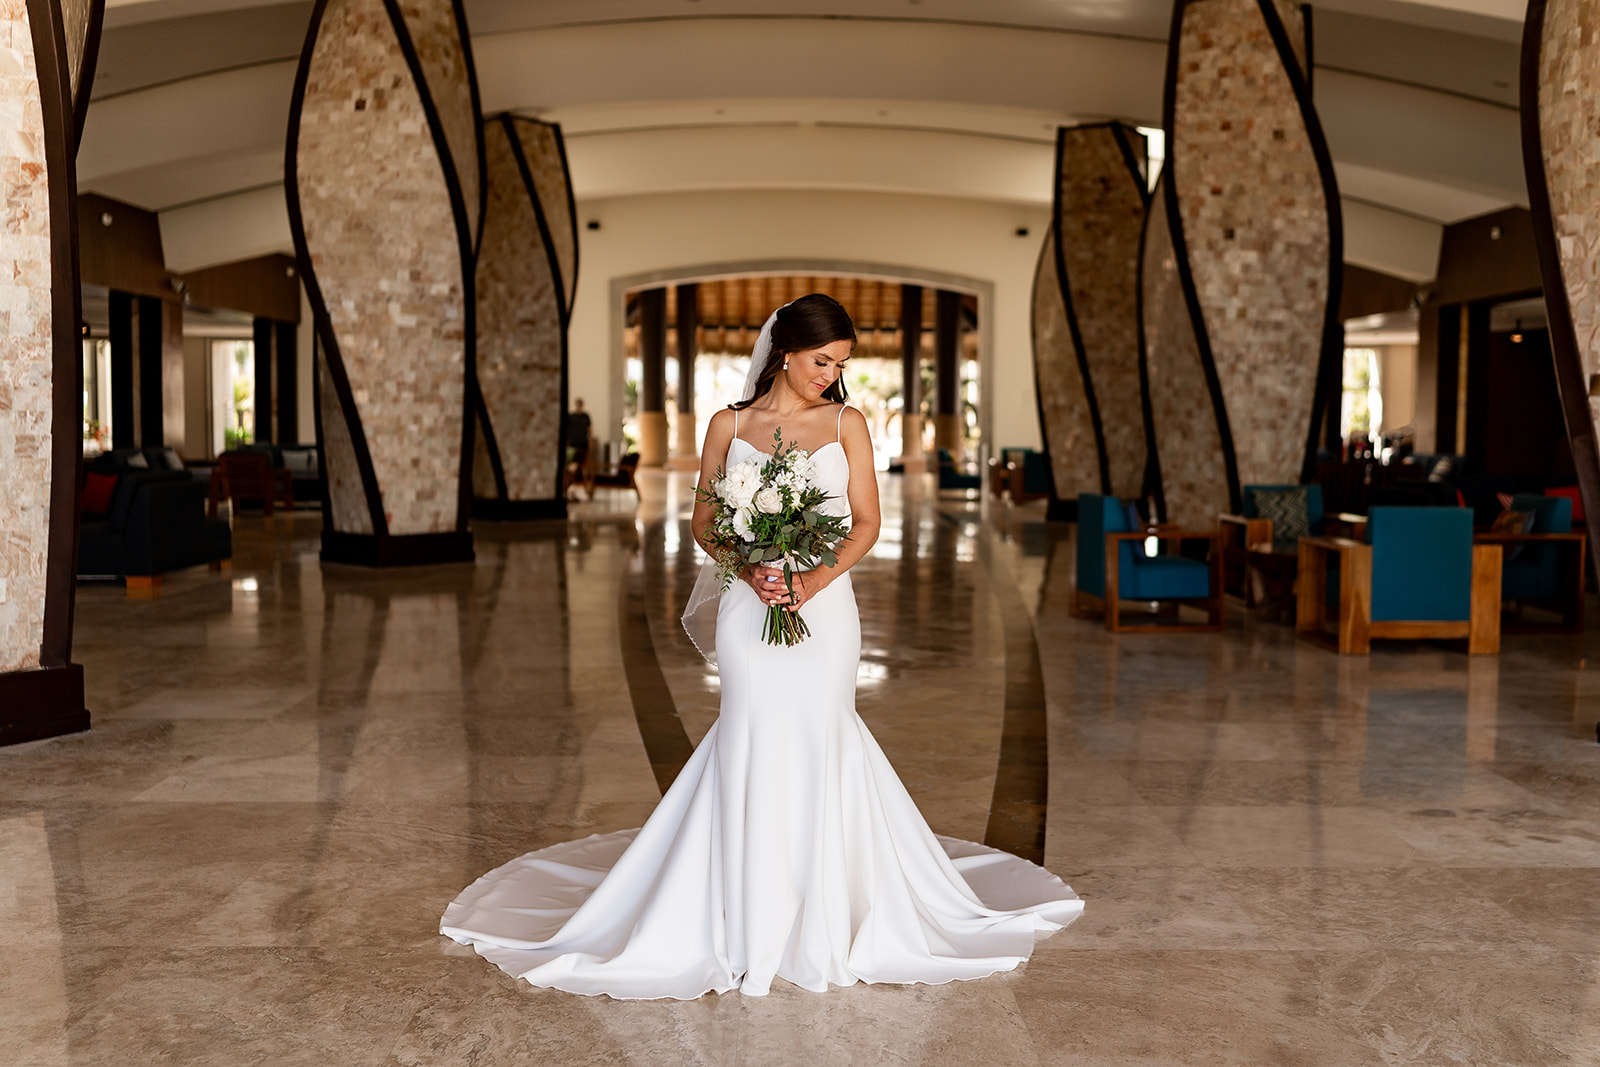 hyatt ziva los cabos bridal portraits at wedding in resort lobby